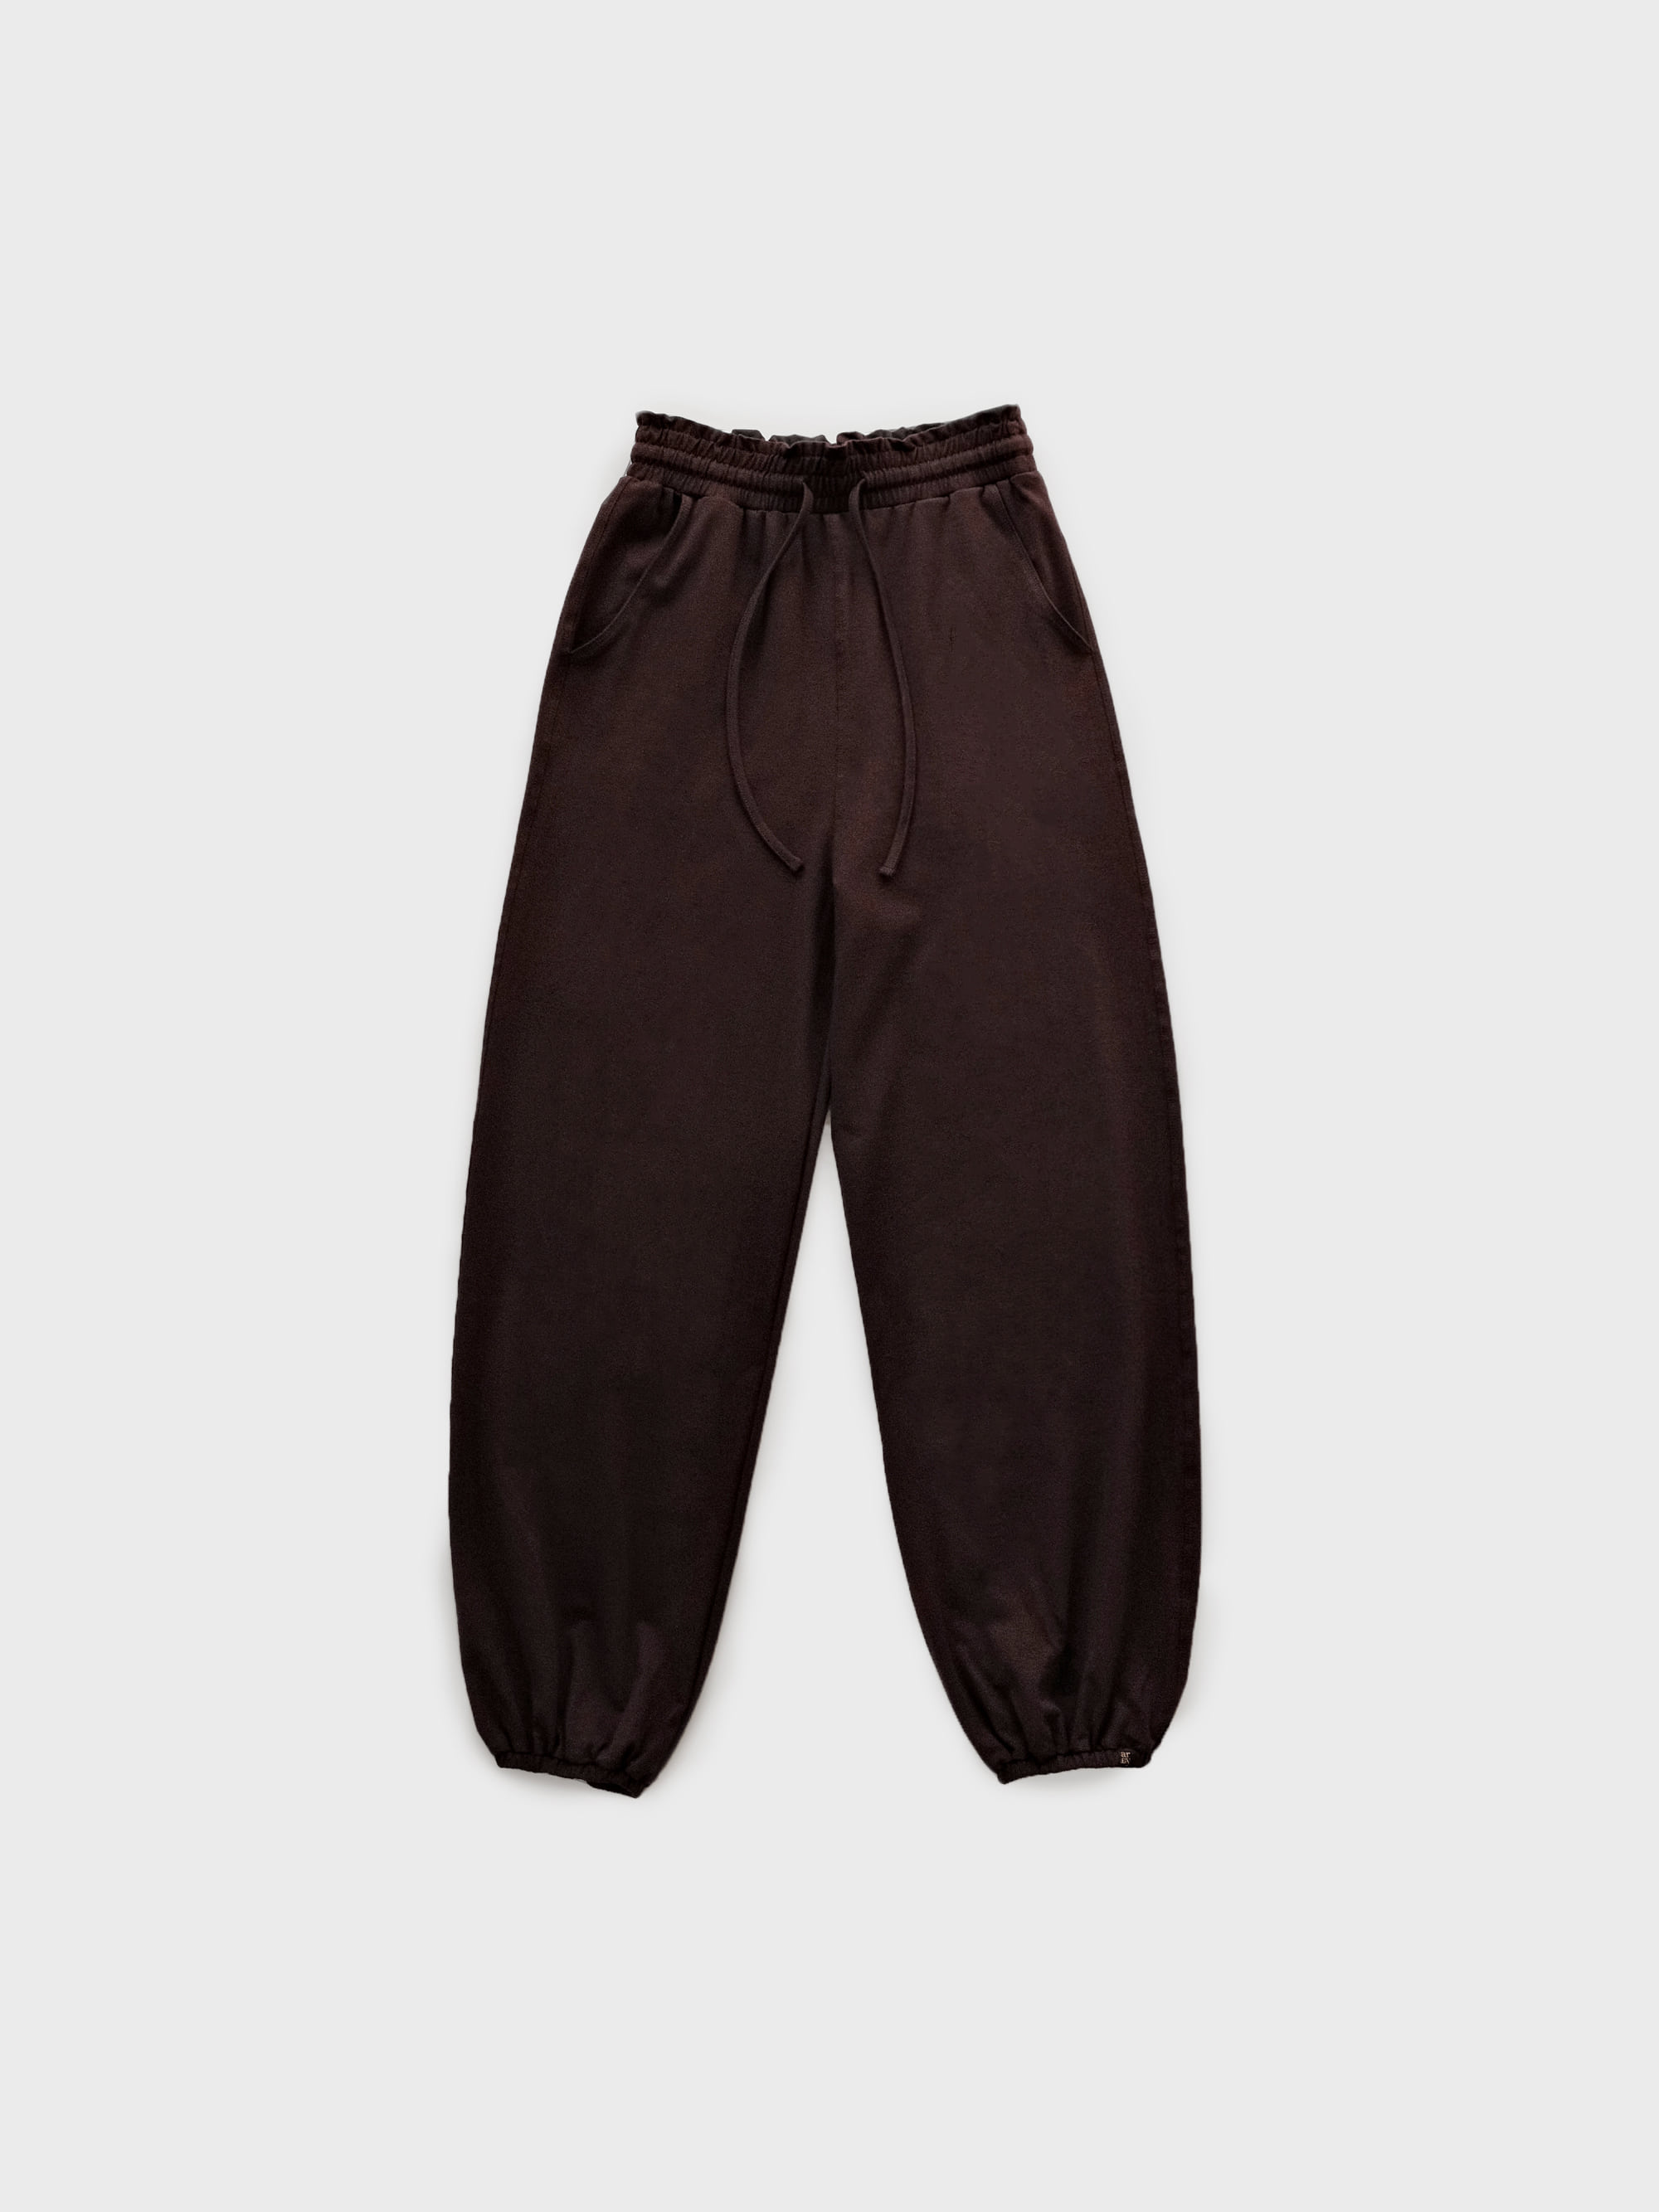 [3차] Ruffle banding pants - chocolate brown